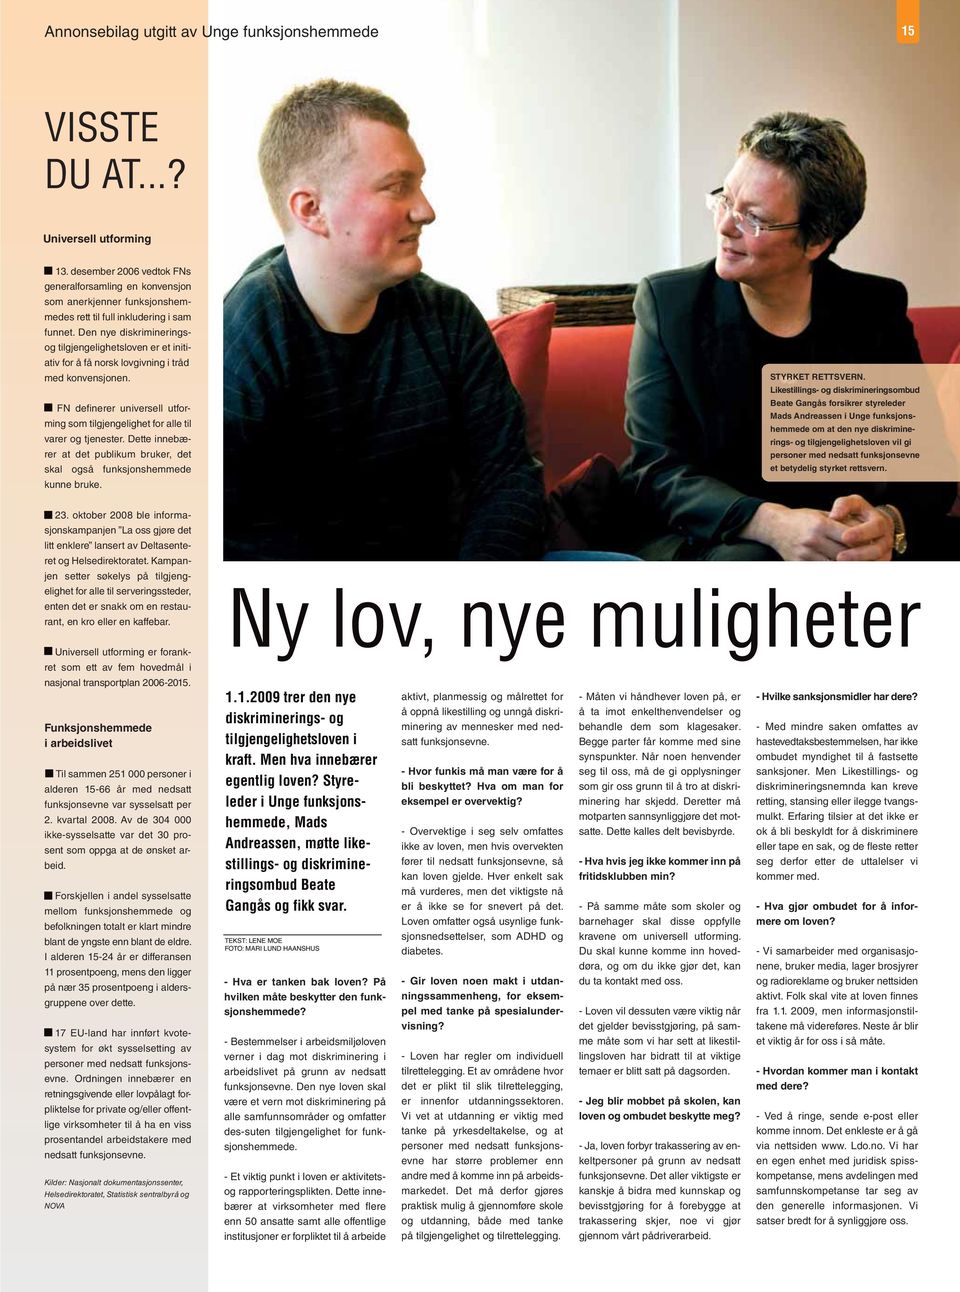 Den nye diskrimineringsog tilgjengelighetsloven er et initiativ for å få norsk lovgivning i tråd med konvensjonen.